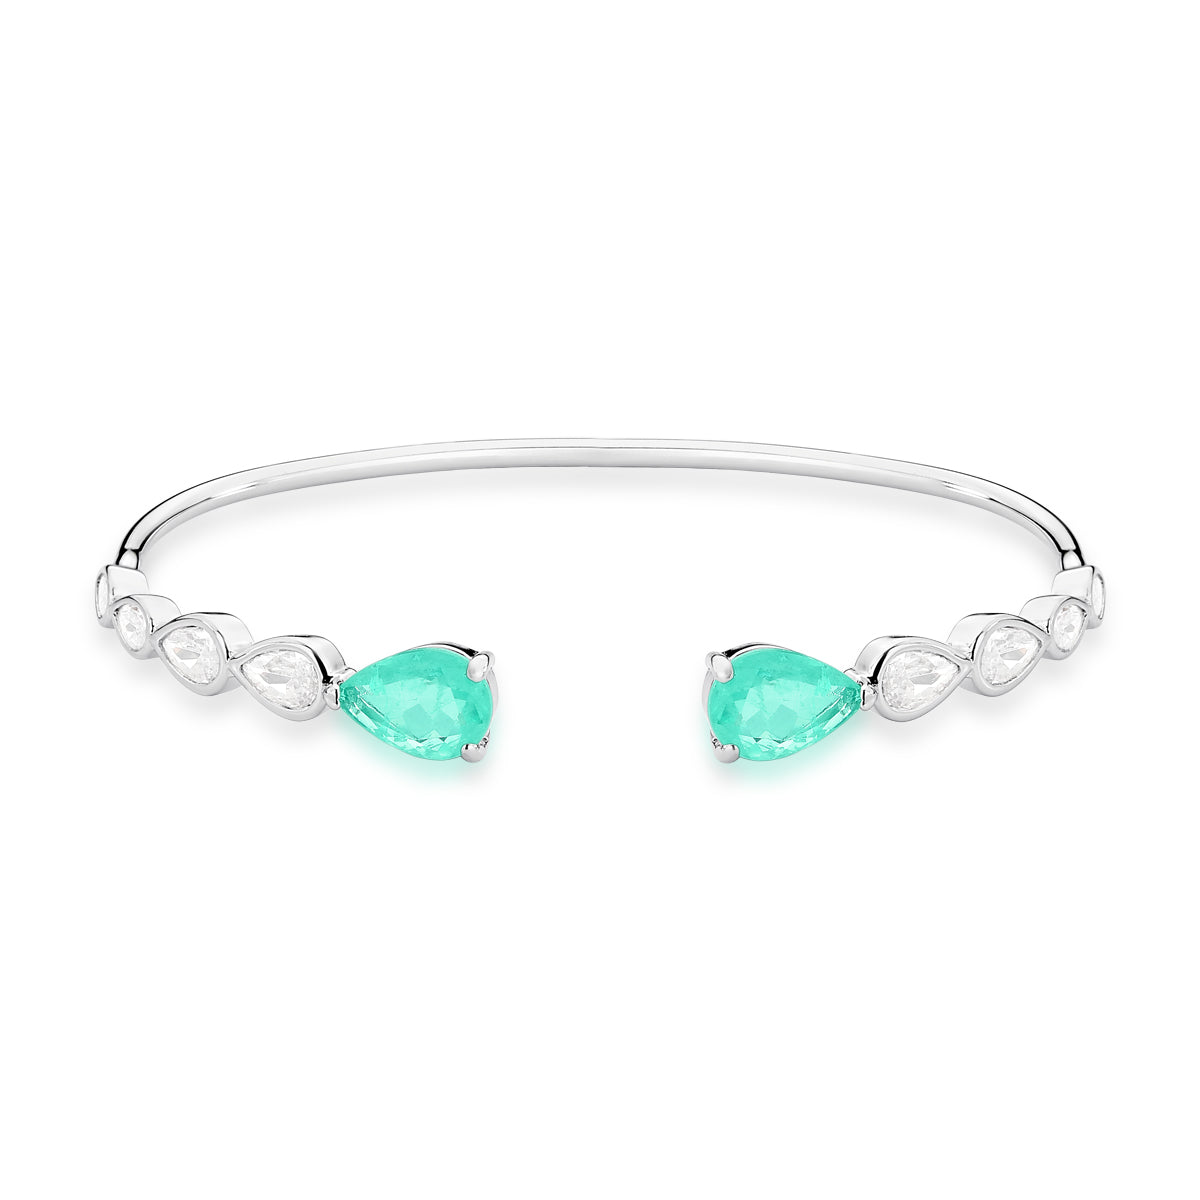 Pulseira bracelete aberto gotas cristais e esmeralda colombiana em ródio branco